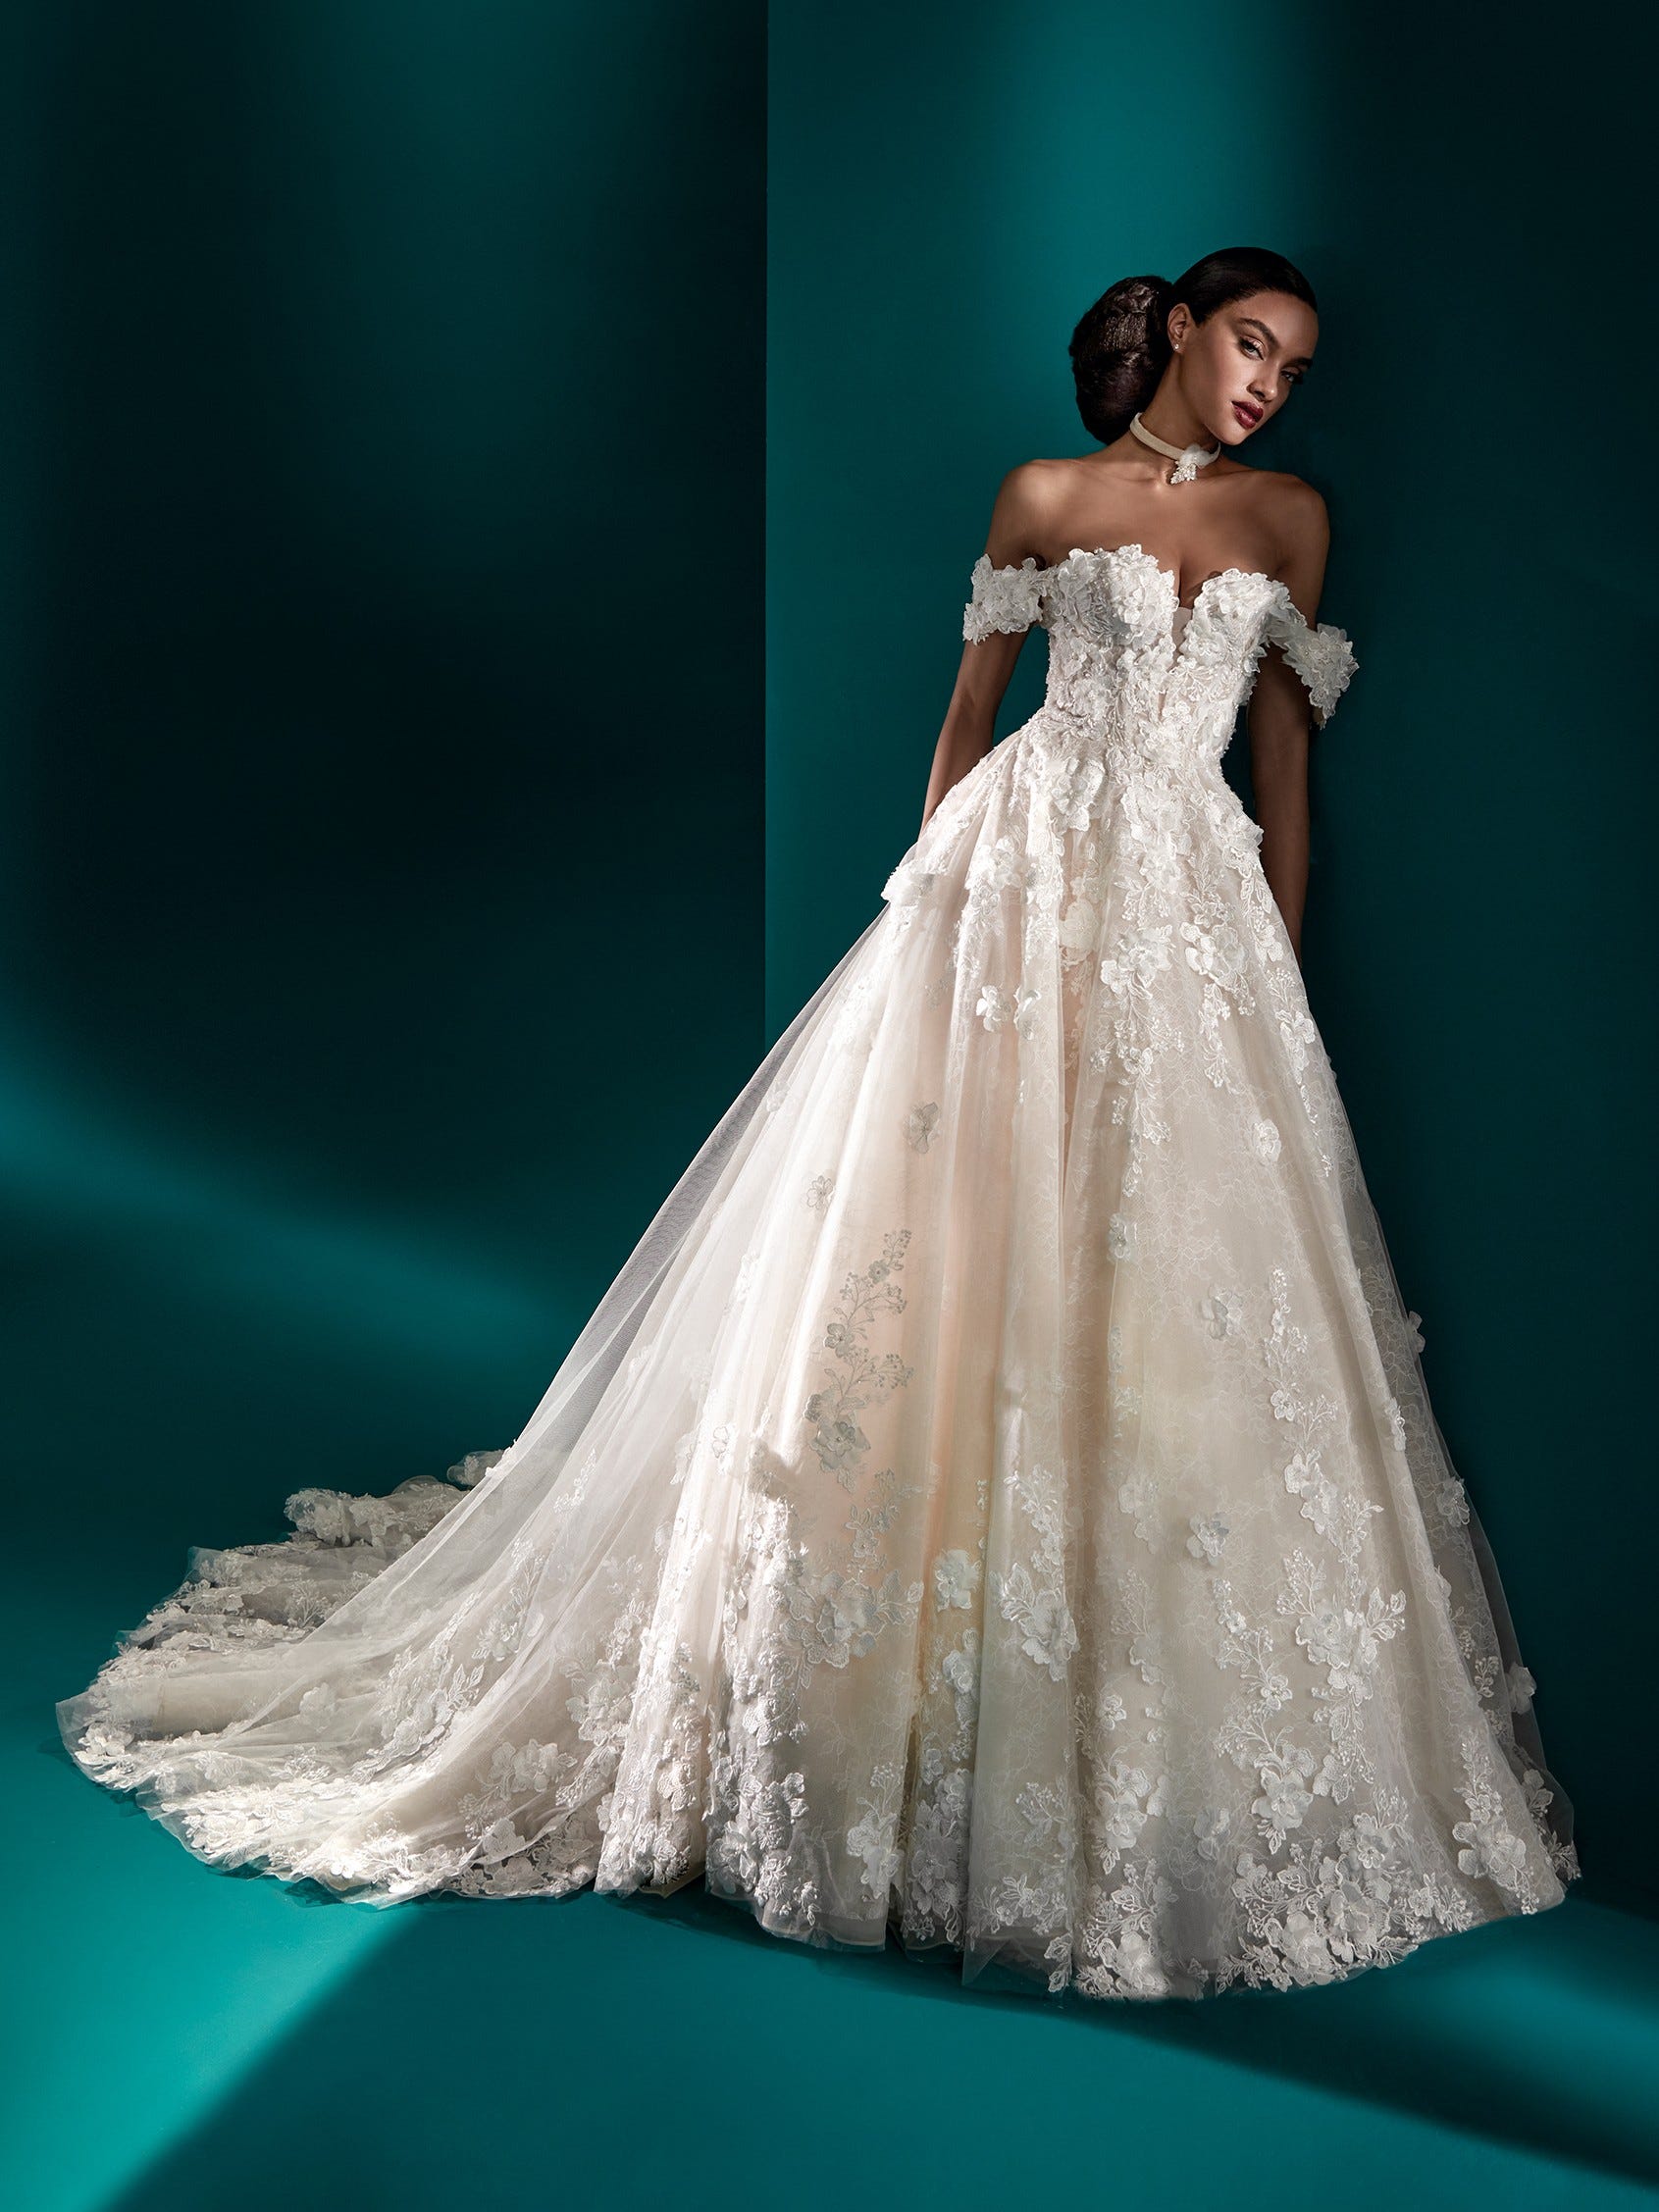 Versailles wedding gown